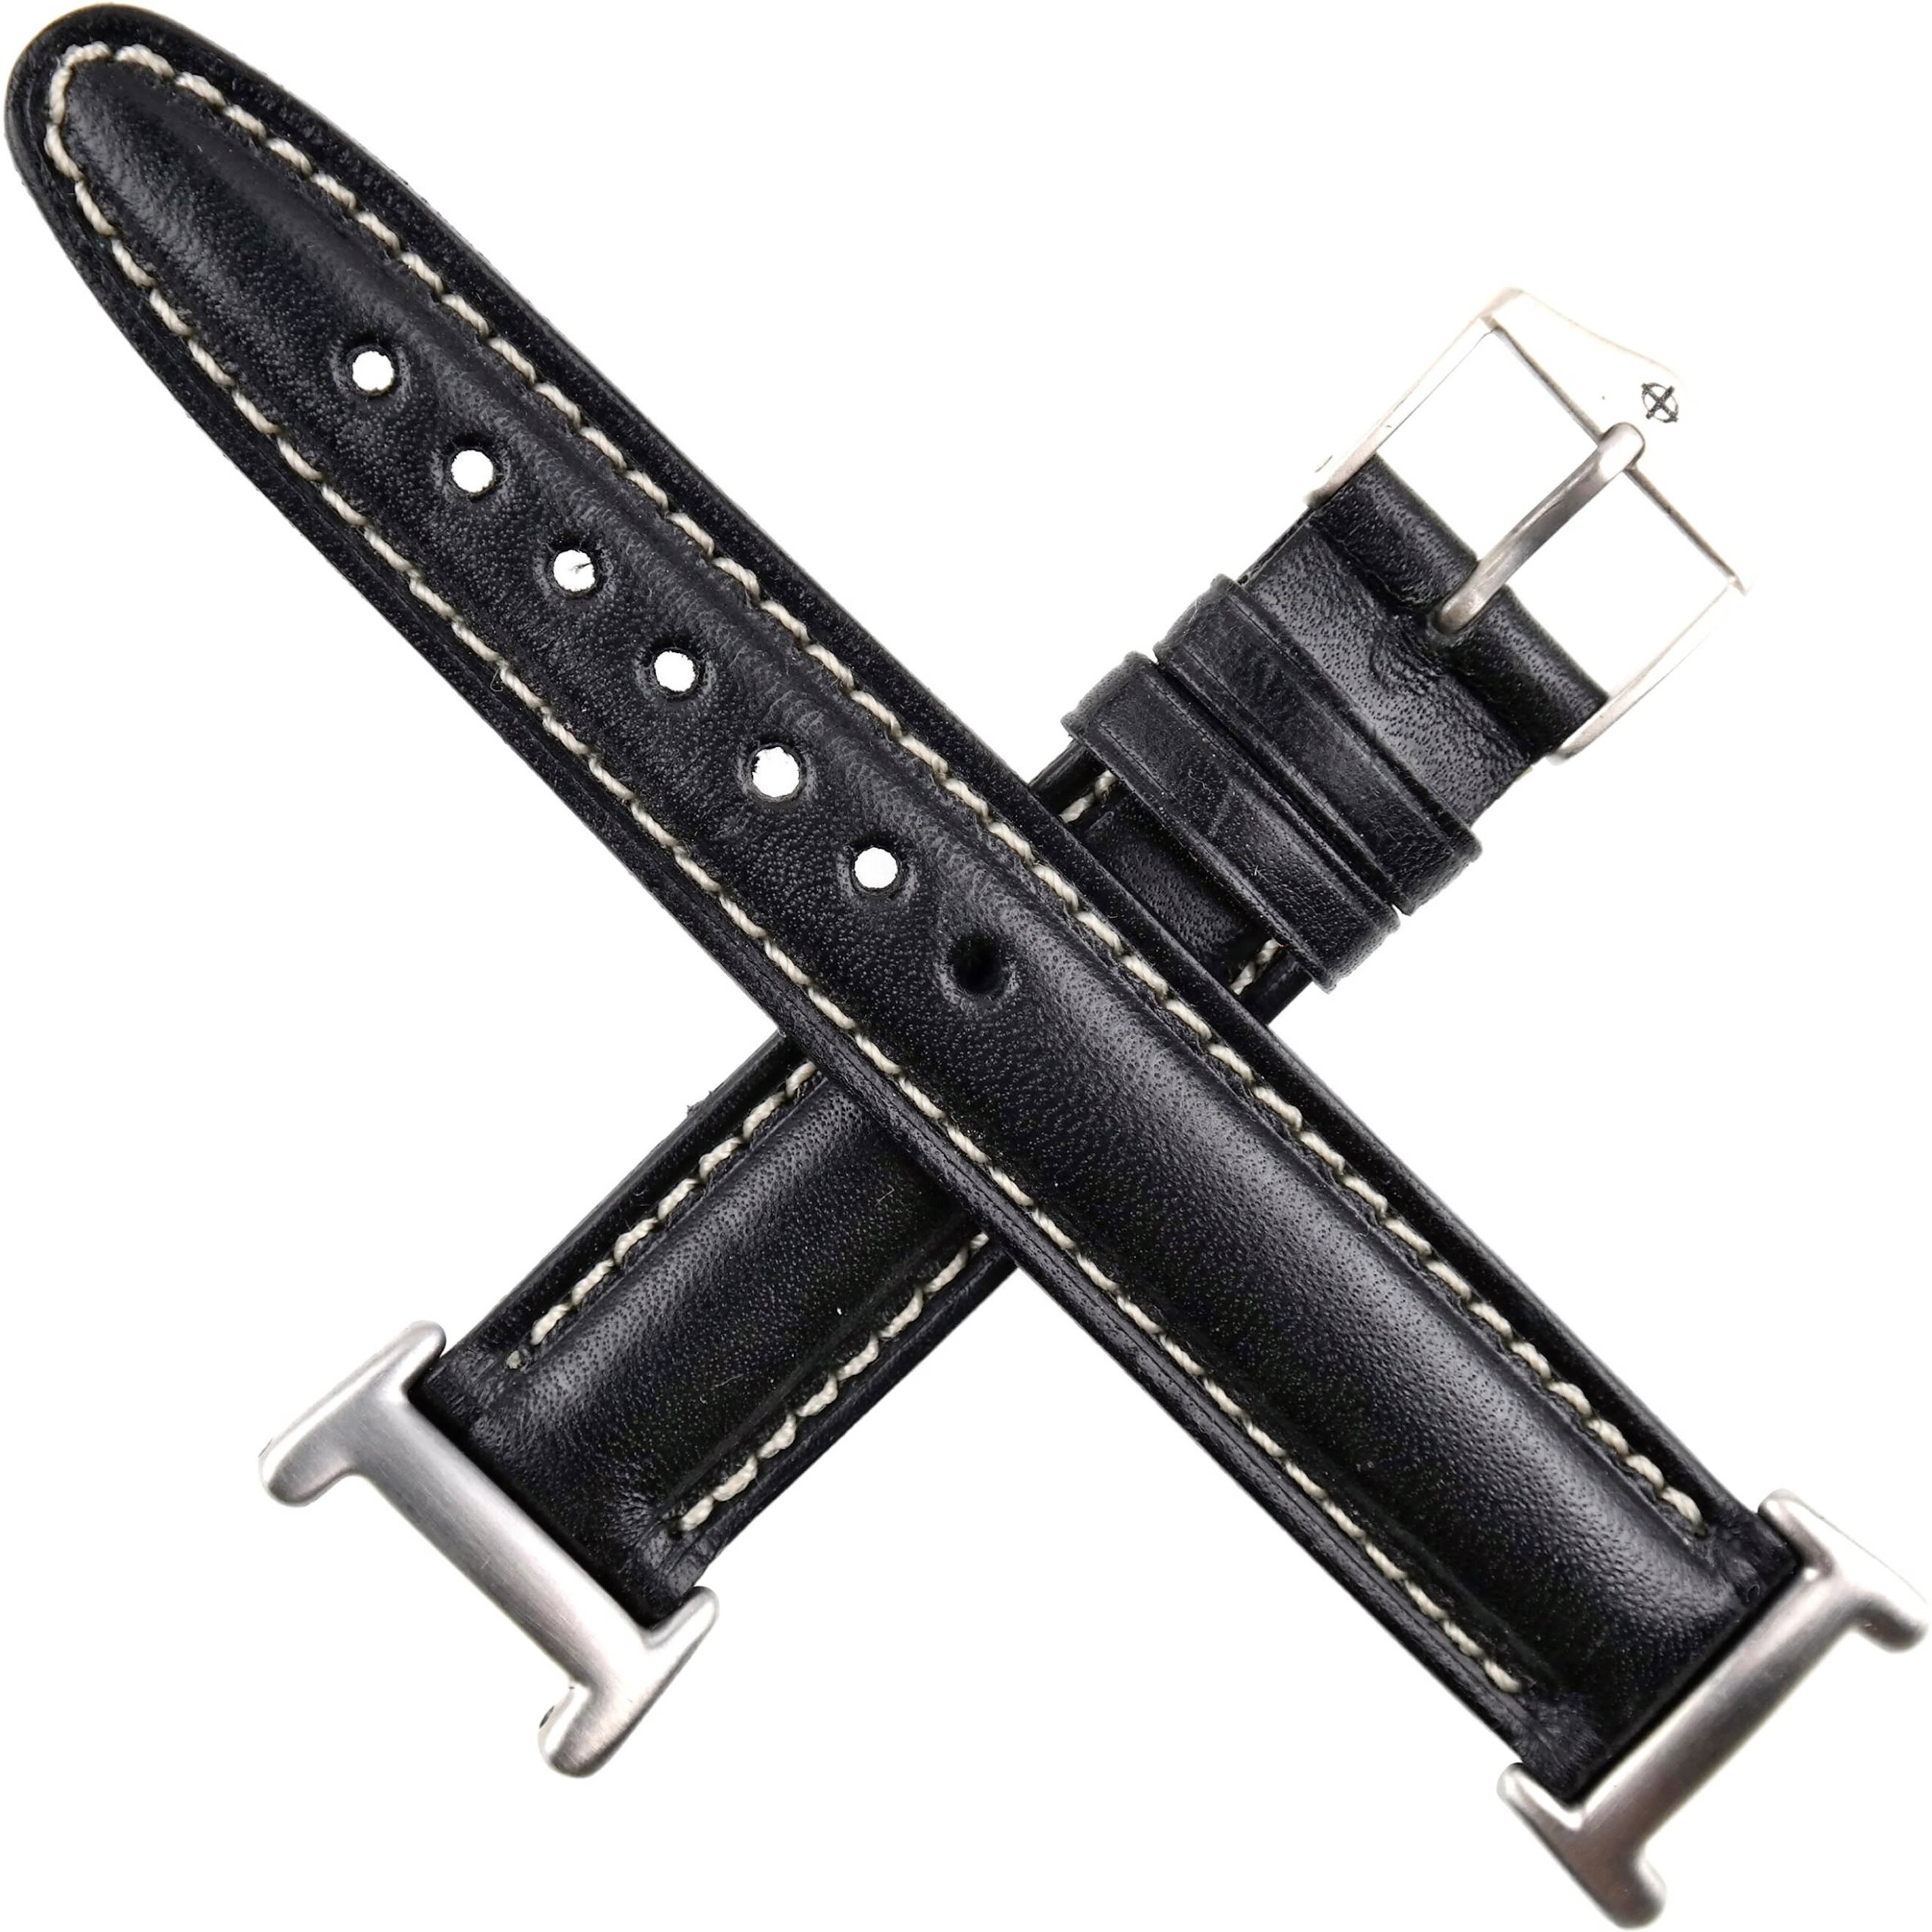 ZODIAC DOT Special Watch Strap - Genuine Leather - Ref. 406.4x.xx